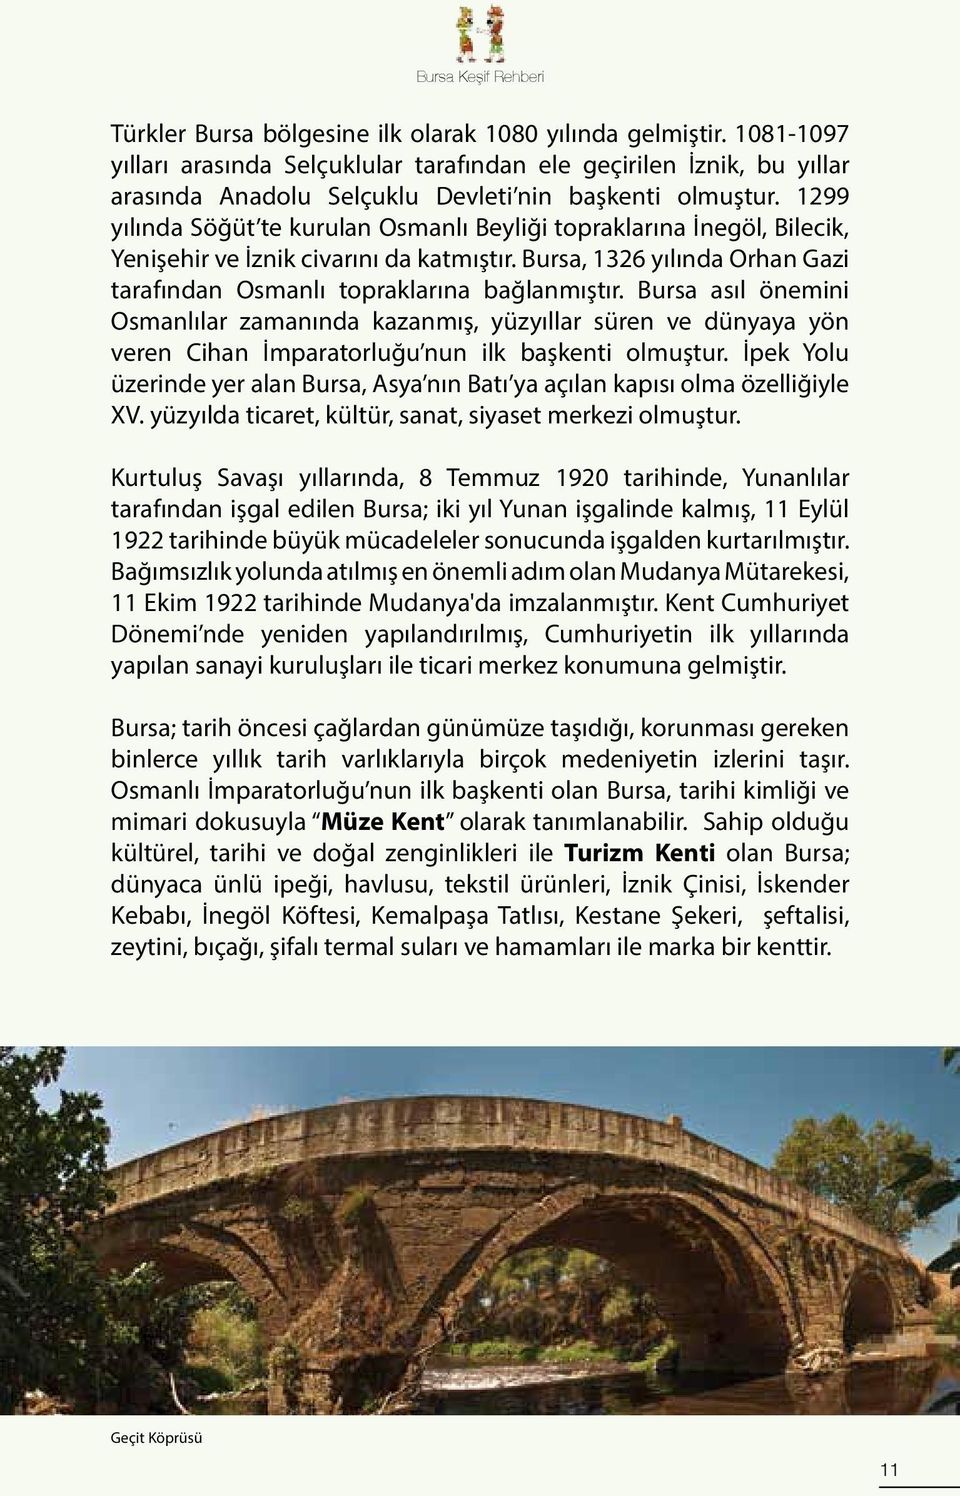 1299 yılında Söğüt te kurulan Osmanlı Beyliği topraklarına İnegöl, Bilecik, Yenişehir ve İznik civarını da katmıştır. Bursa, 1326 yılında Orhan Gazi tarafından Osmanlı topraklarına bağlanmıştır.